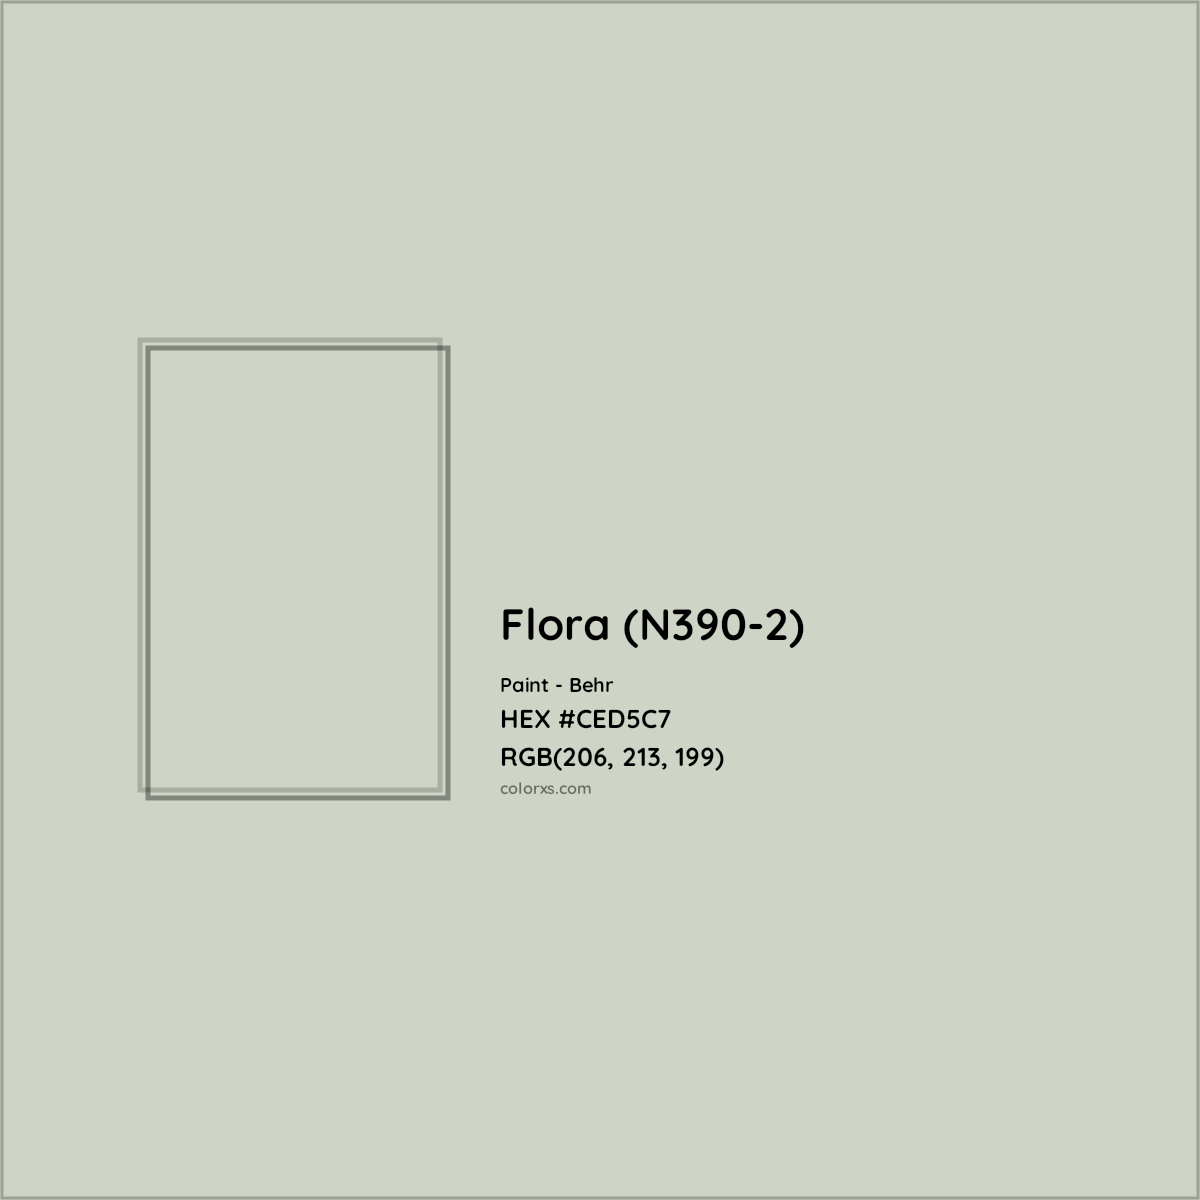 HEX #CED5C7 Flora (N390-2) Paint Behr - Color Code